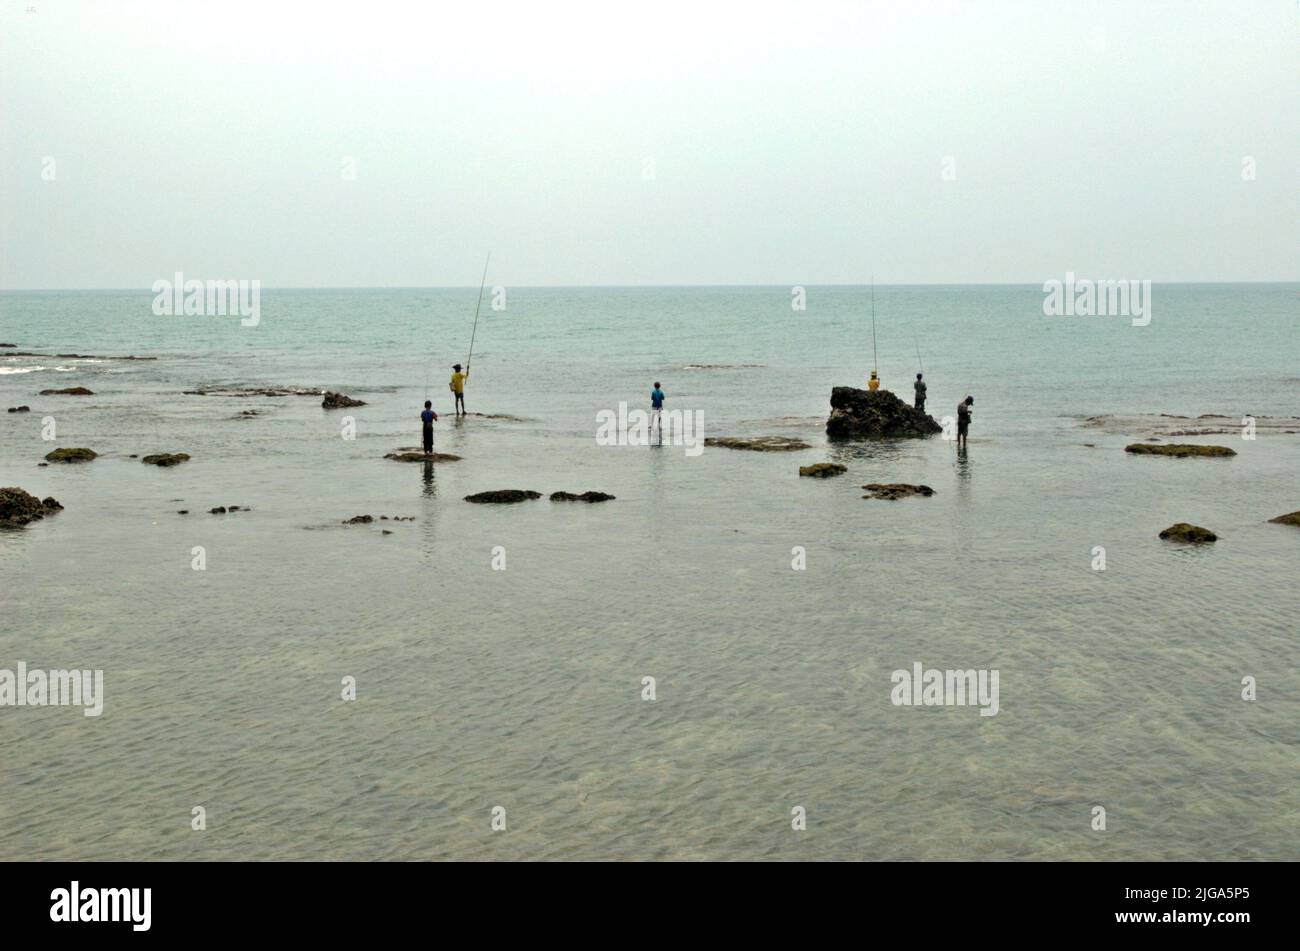 Les gens pêchent en étant debout sur des eaux peu profondes sur une plage plate et rocheuse face au détroit de Sunda à Cikoneng, Anyer, Serang, Banten, Indonésie. Banque D'Images